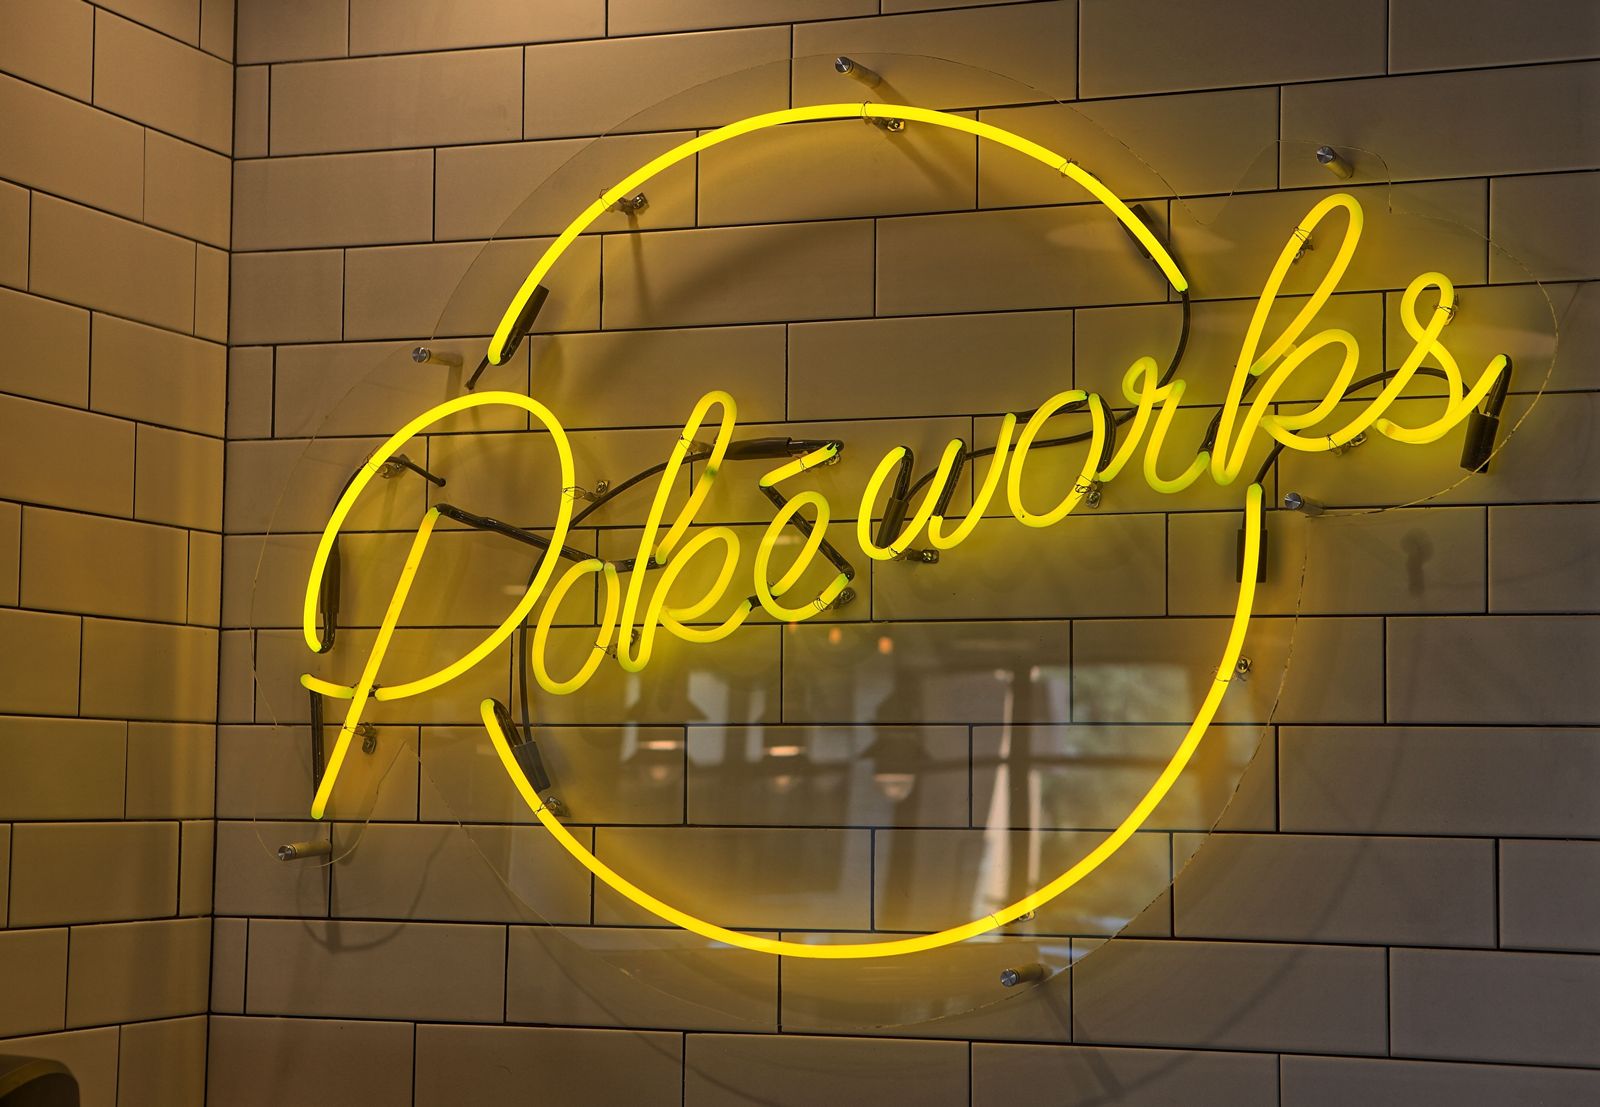 Pokeworks revient à New York et achève la réouverture du marché intérieur